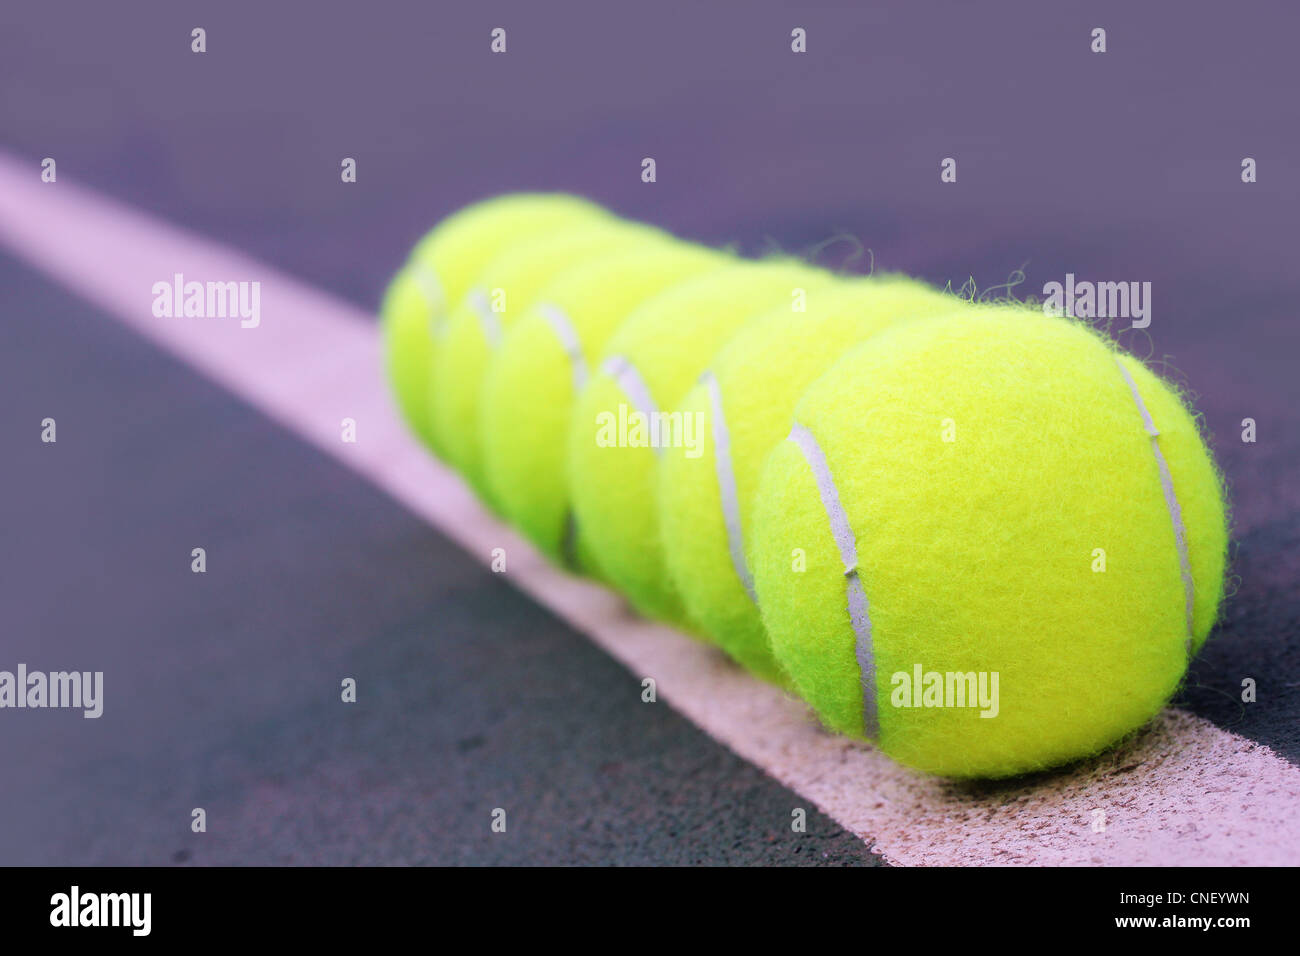 Pelotas de tenis cercanos dispuestos en fila en hard court tennis césped sintético Foto de stock